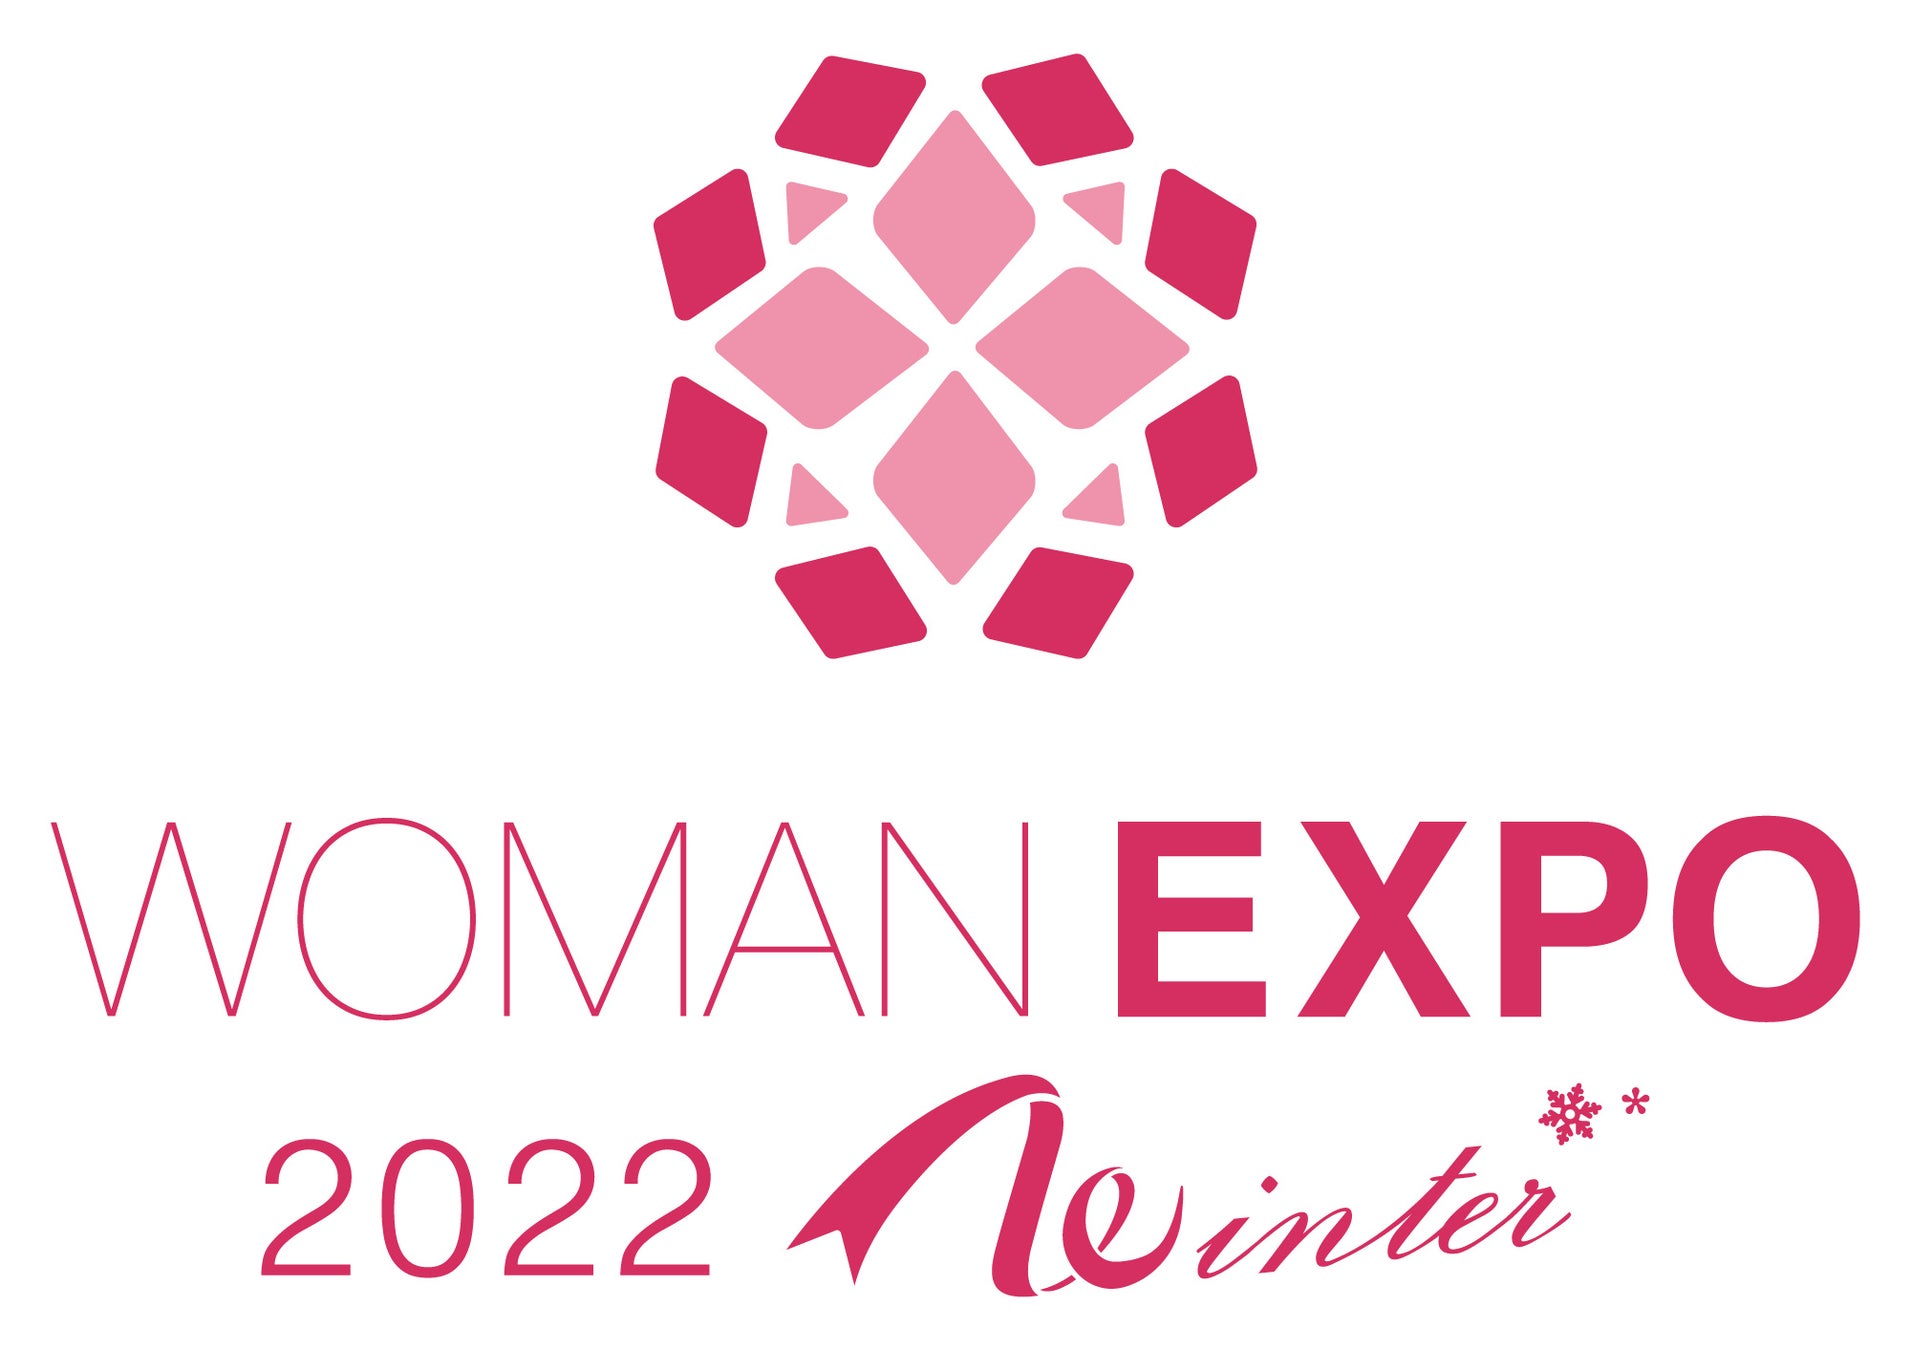 自分らしく輝くすべてのワーキングウーマンのための総合イベントWOMAN EXPO 2022 Winter 11月26日(土)東京ミッドタウンにて開催 セミナー事前申込(無料)を受付中!